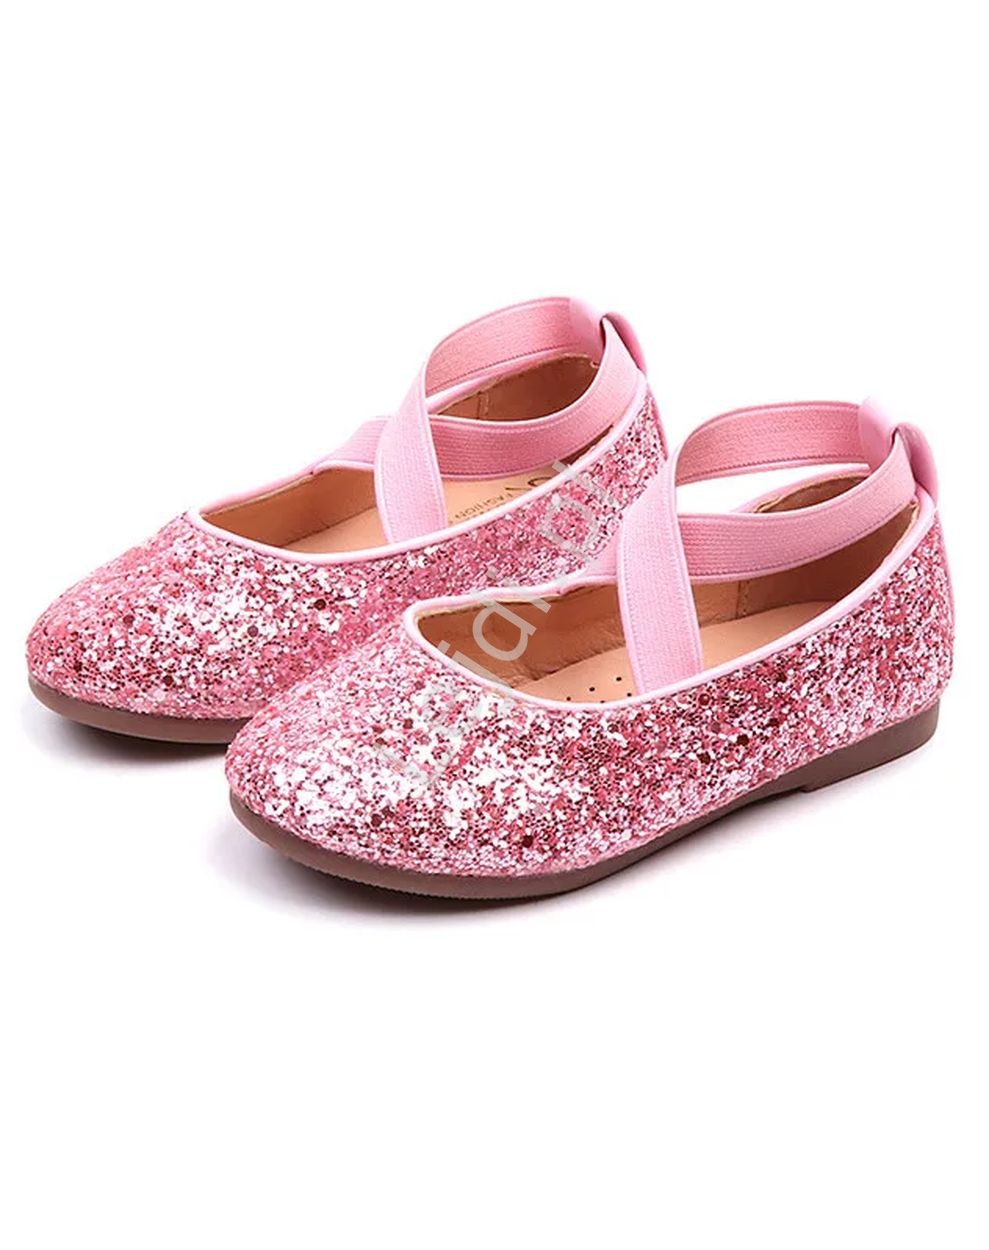 Image of Brokatowe buty dla dziewczynki, błyszczące dziecięce baleriny w różowym kolorze 251